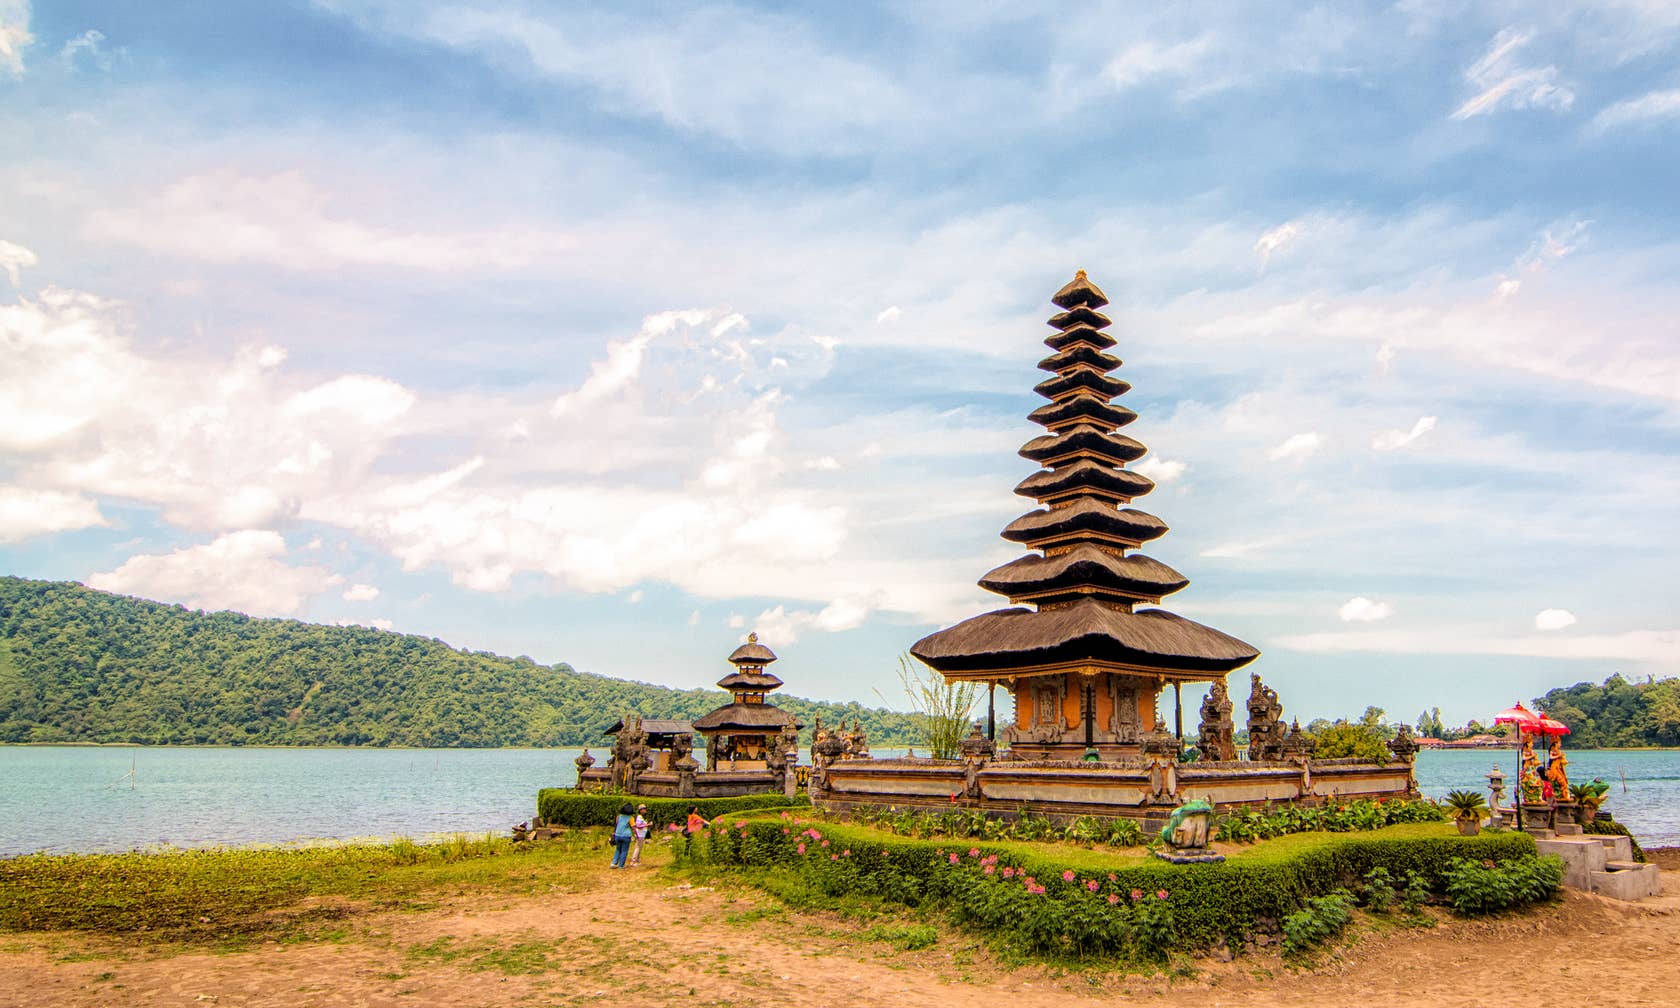 Case de vacanță în Bali